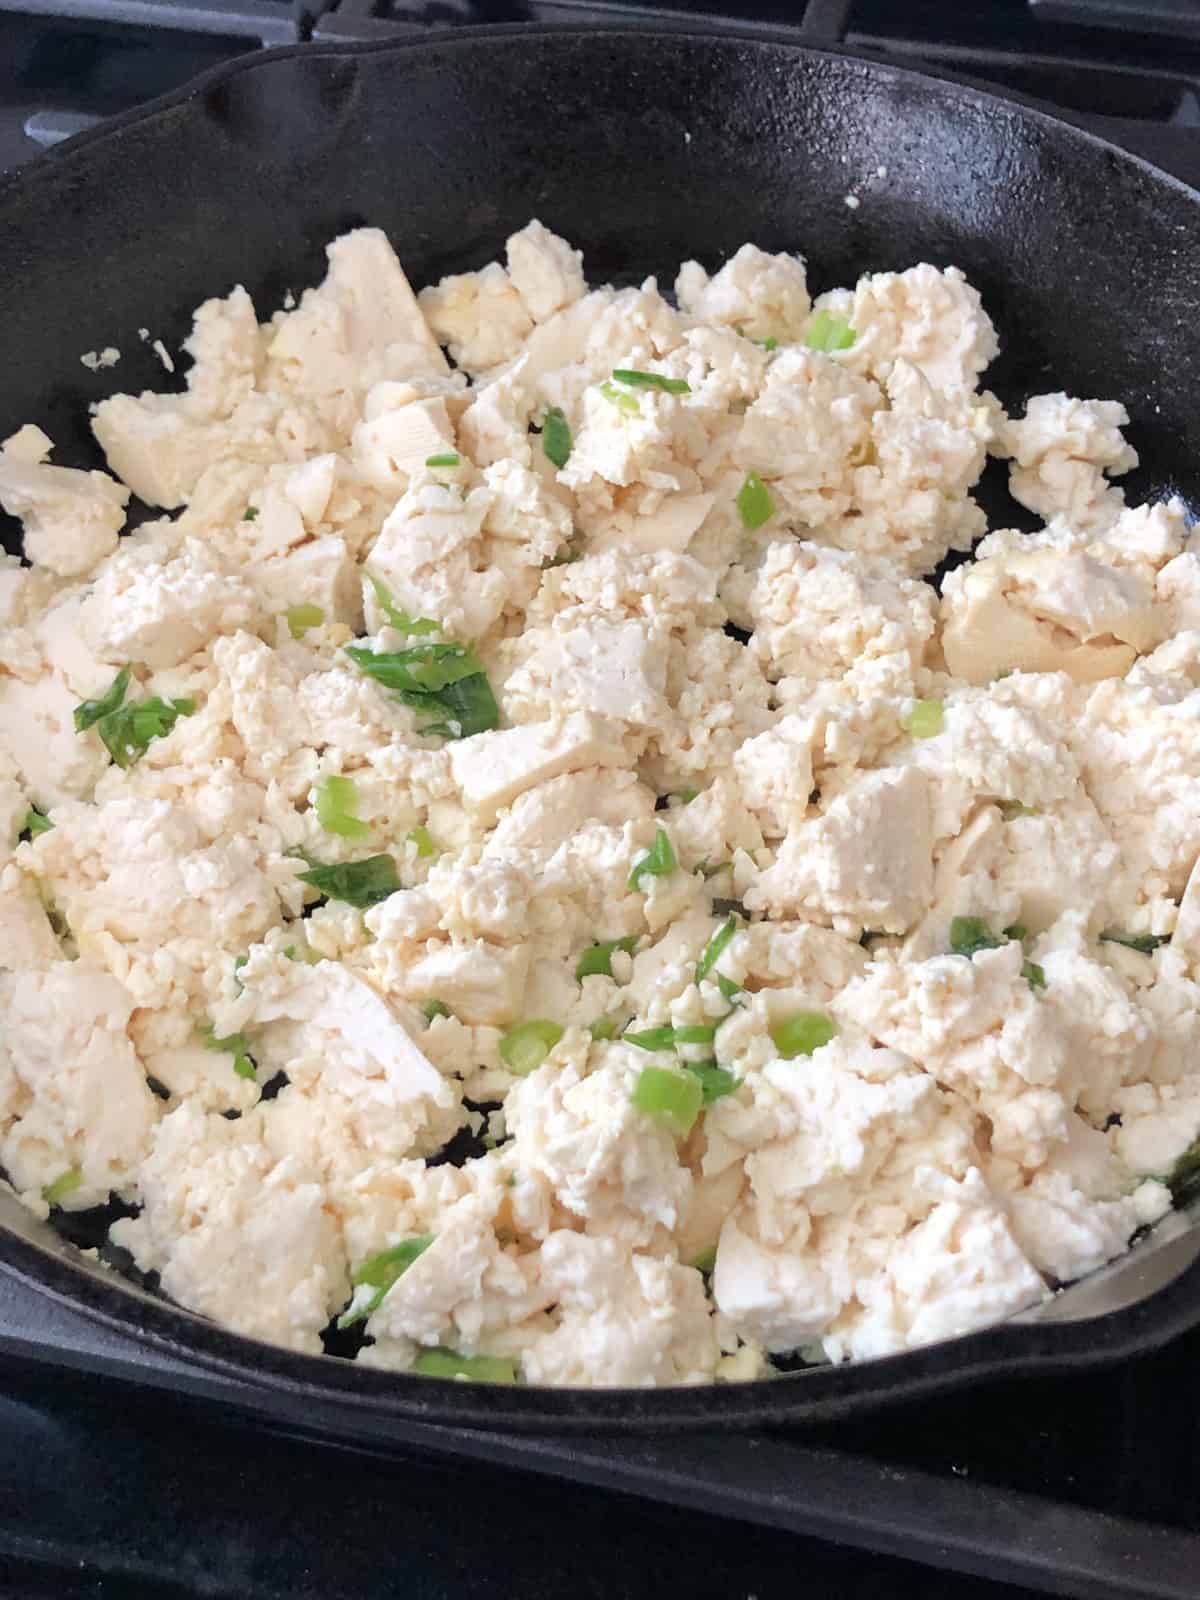 Fluffy vegan scrambled tofu eggs in a skillet.